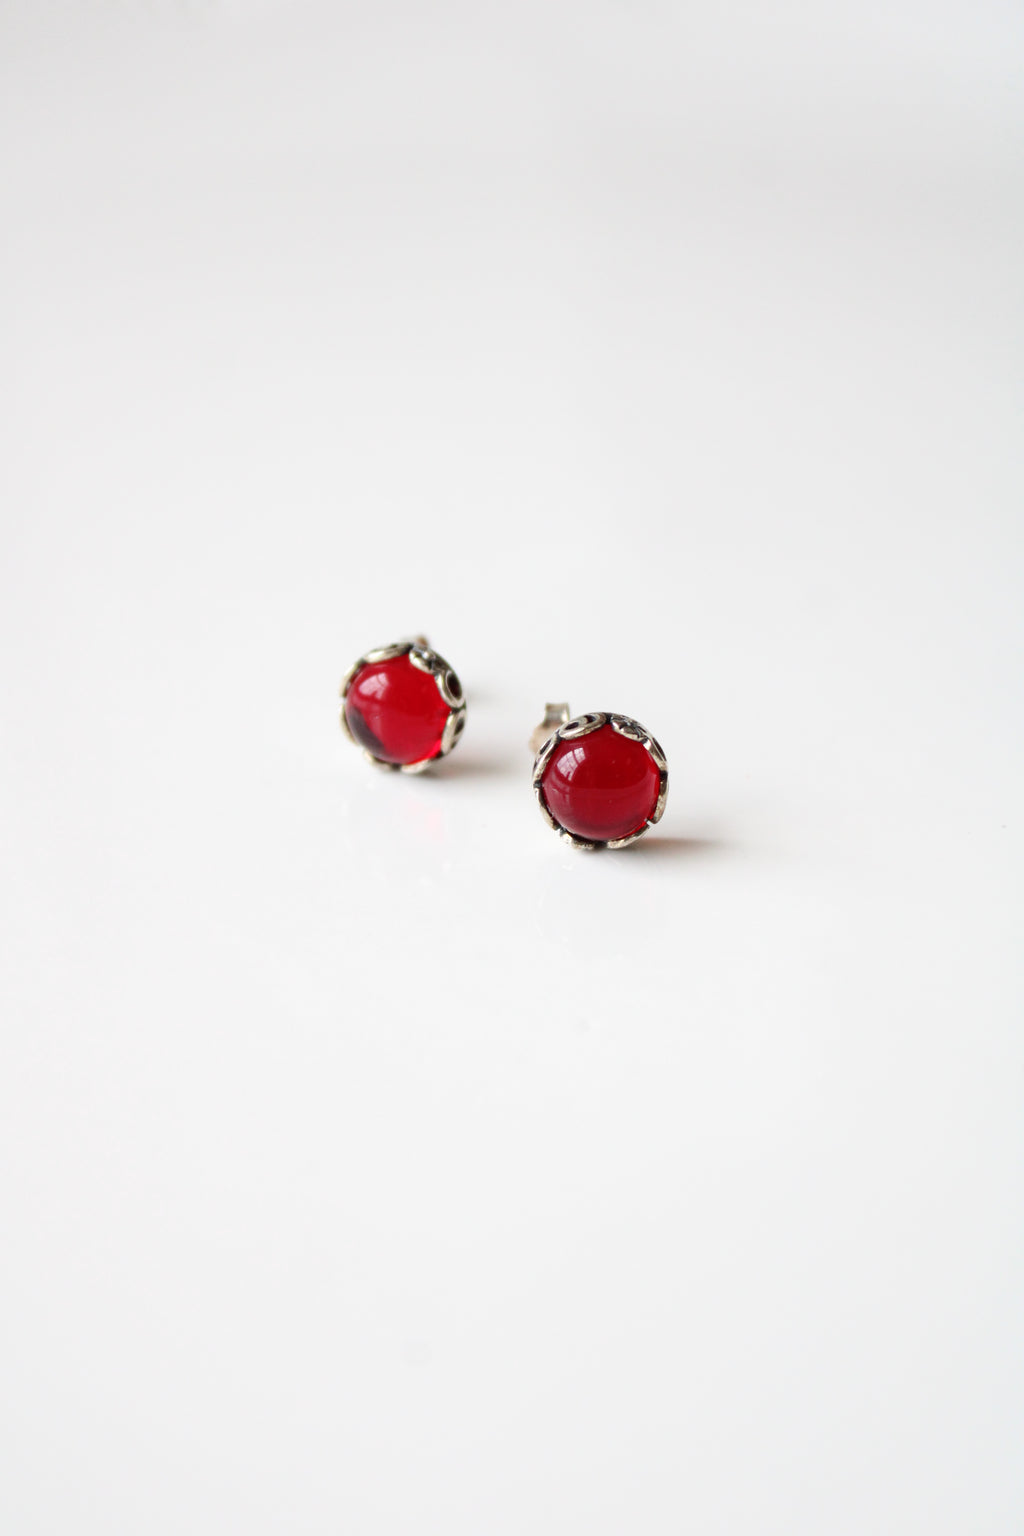 Dark Cherry Red Sterling Silver Stud Earrings